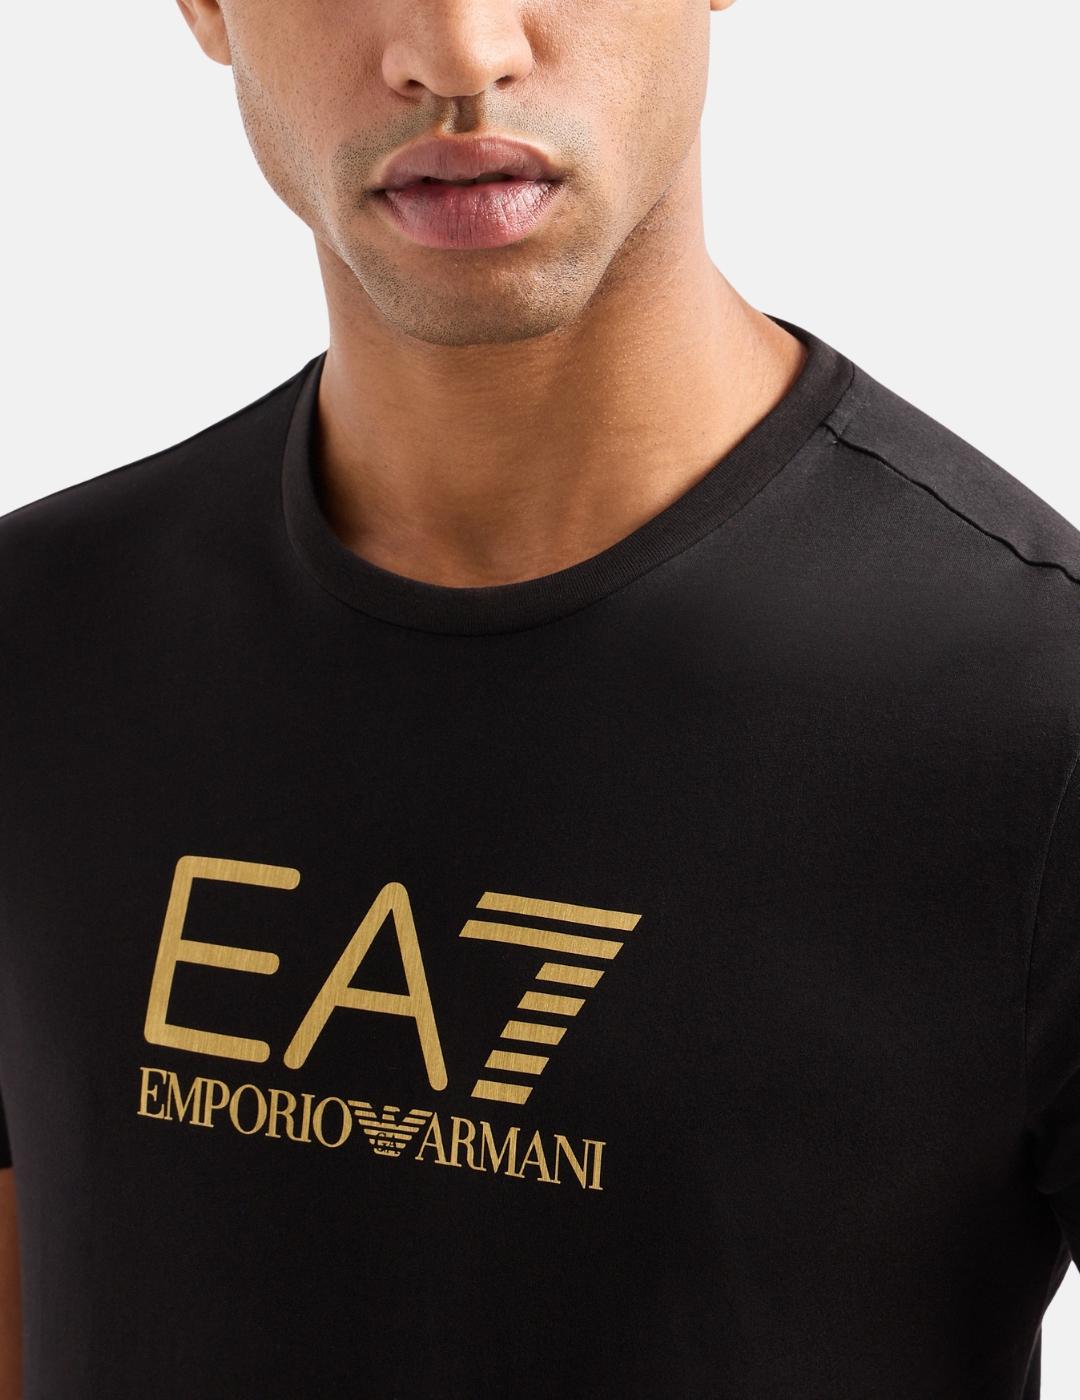 Camiseta EA7 negra maxilogo Dorado hombre